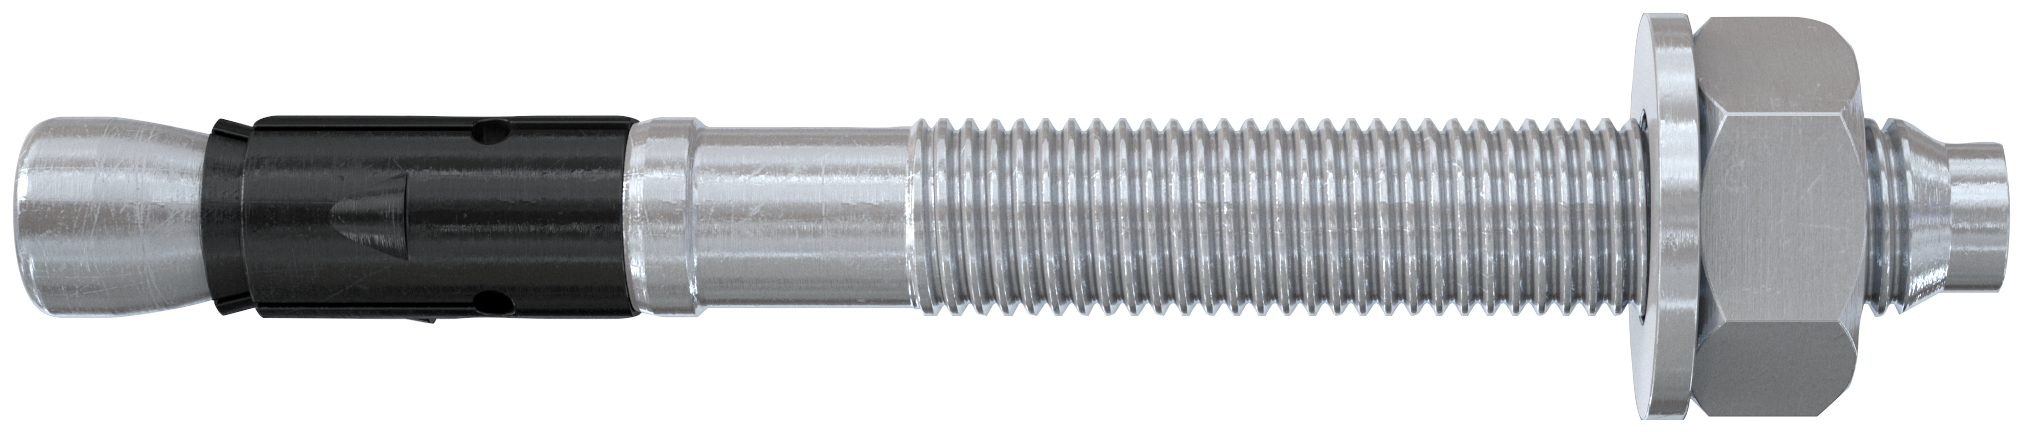 fischer Tassello acciaio FAZ II 16-50 (10 Pz.) L'ancorante ad espansione ad alte prestazioni per carichi statici su calcestruzzo fessurato e per applicazioni sismiche. Versione in acciaio zincato. fie1141